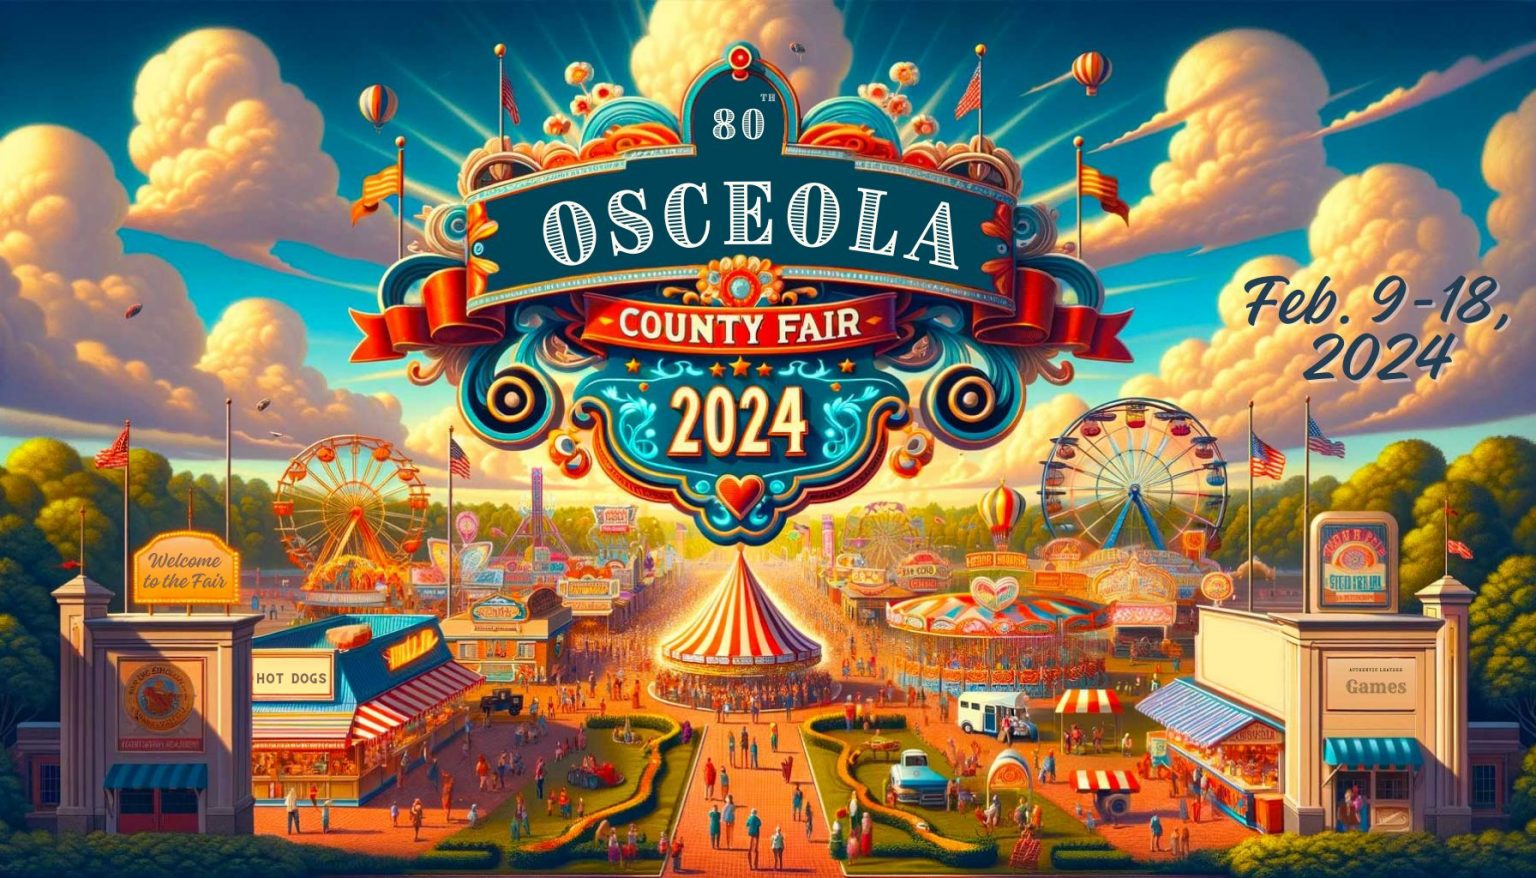 Osceola County Fair 2024